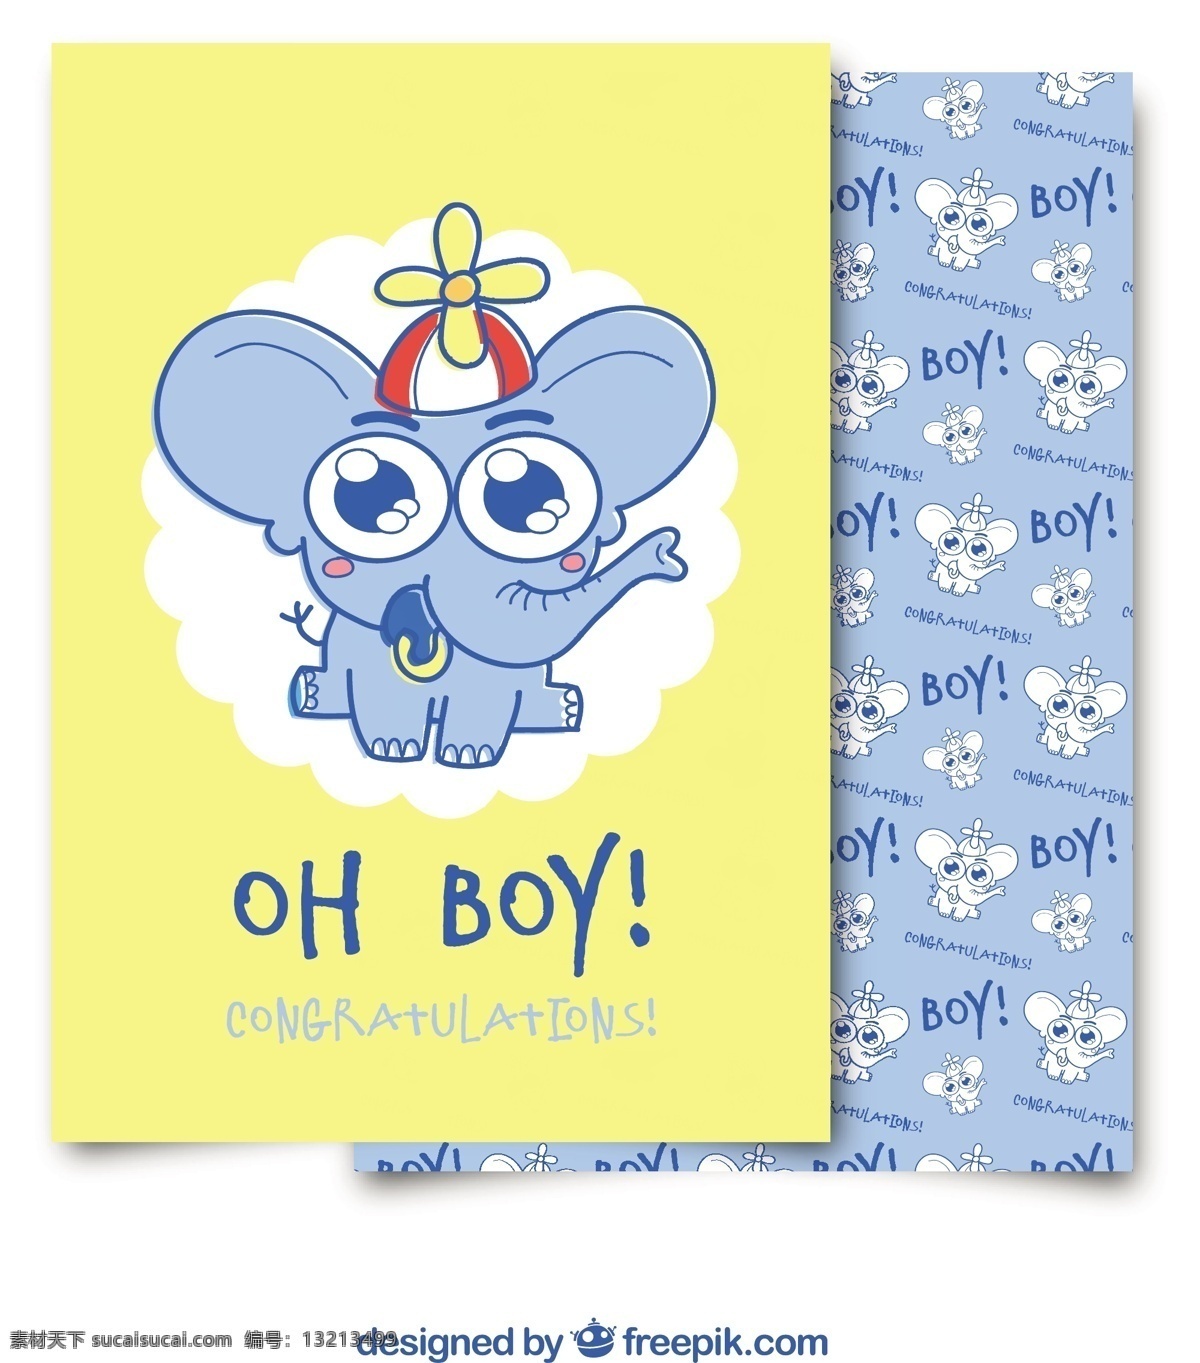 可爱 婴儿 洗澡 卡 邀请 党 卡片 模板 蓝色 卡通 婴儿淋浴 邀请卡 庆祝 儿童 大象 男孩 新的 男婴 党的邀请 公告 淋浴 婴儿卡